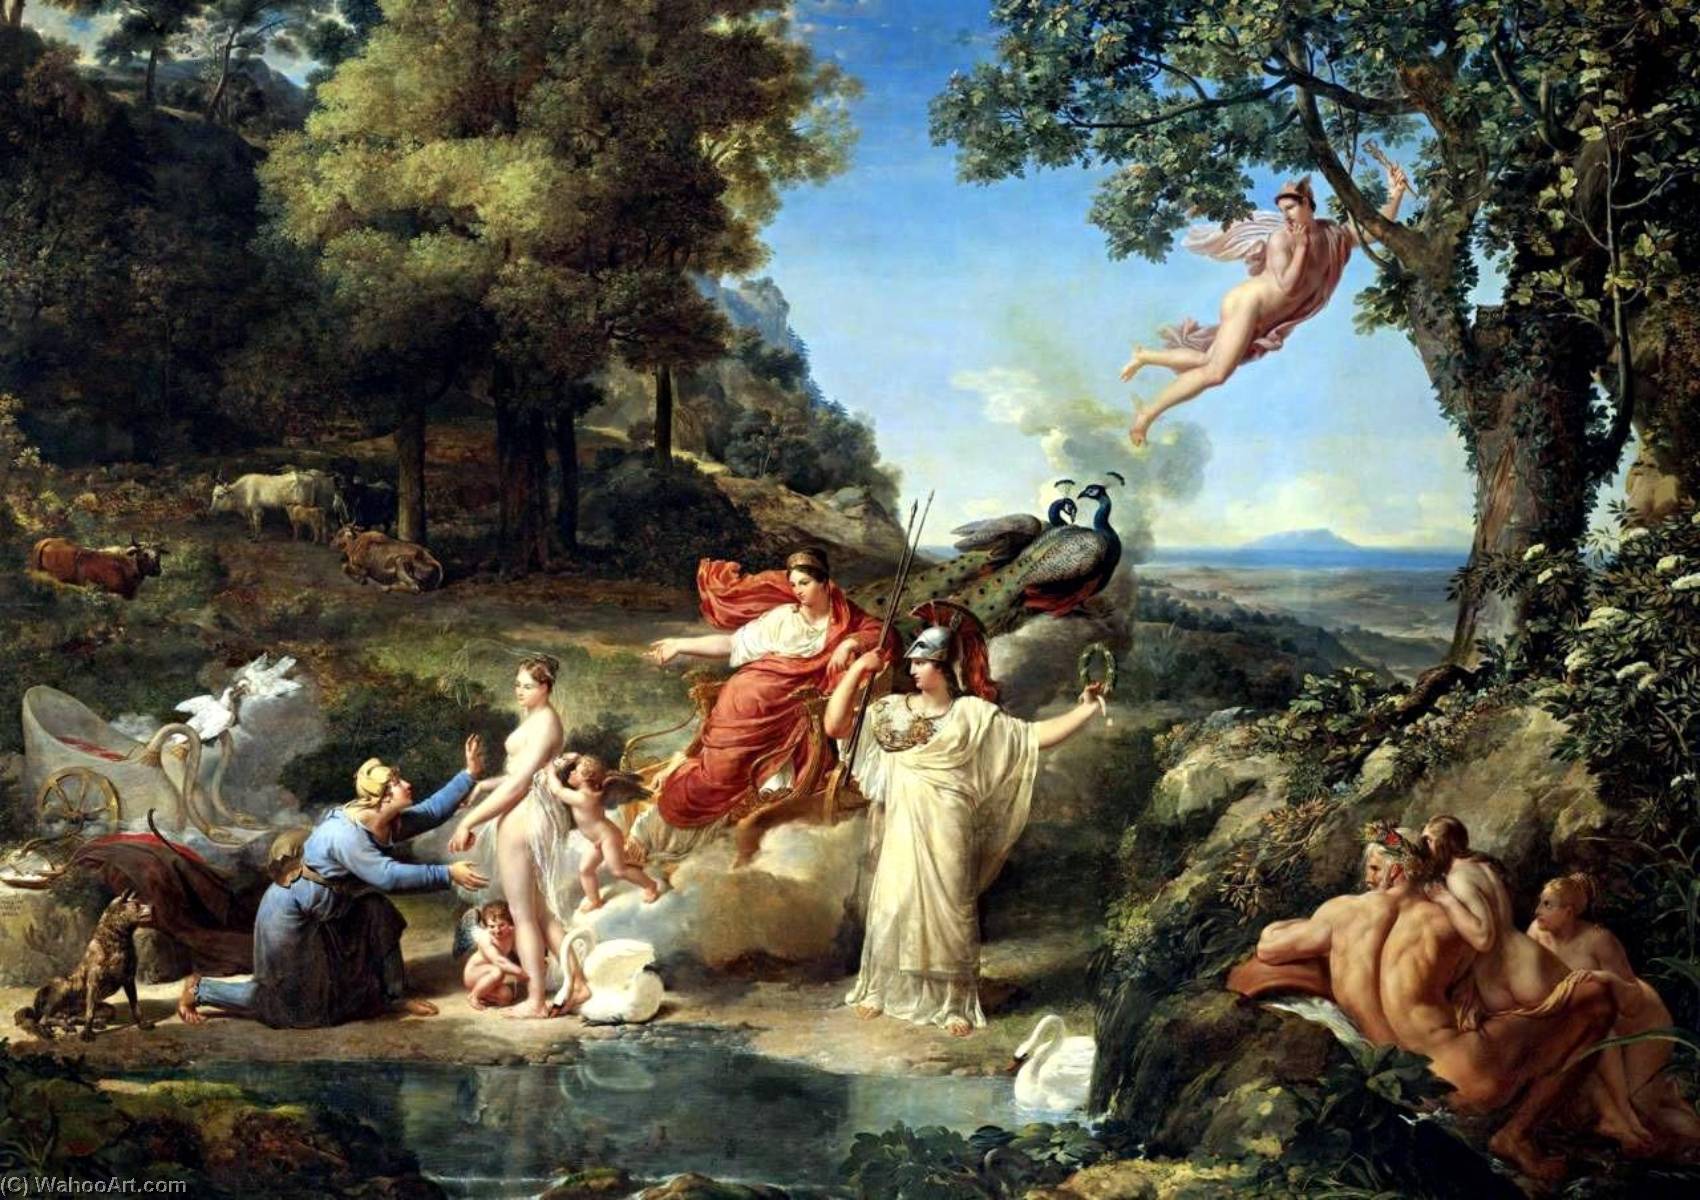 WikiOO.org - אנציקלופדיה לאמנויות יפות - ציור, יצירות אמנות Guillaume Lethière - The Judgment of Paris